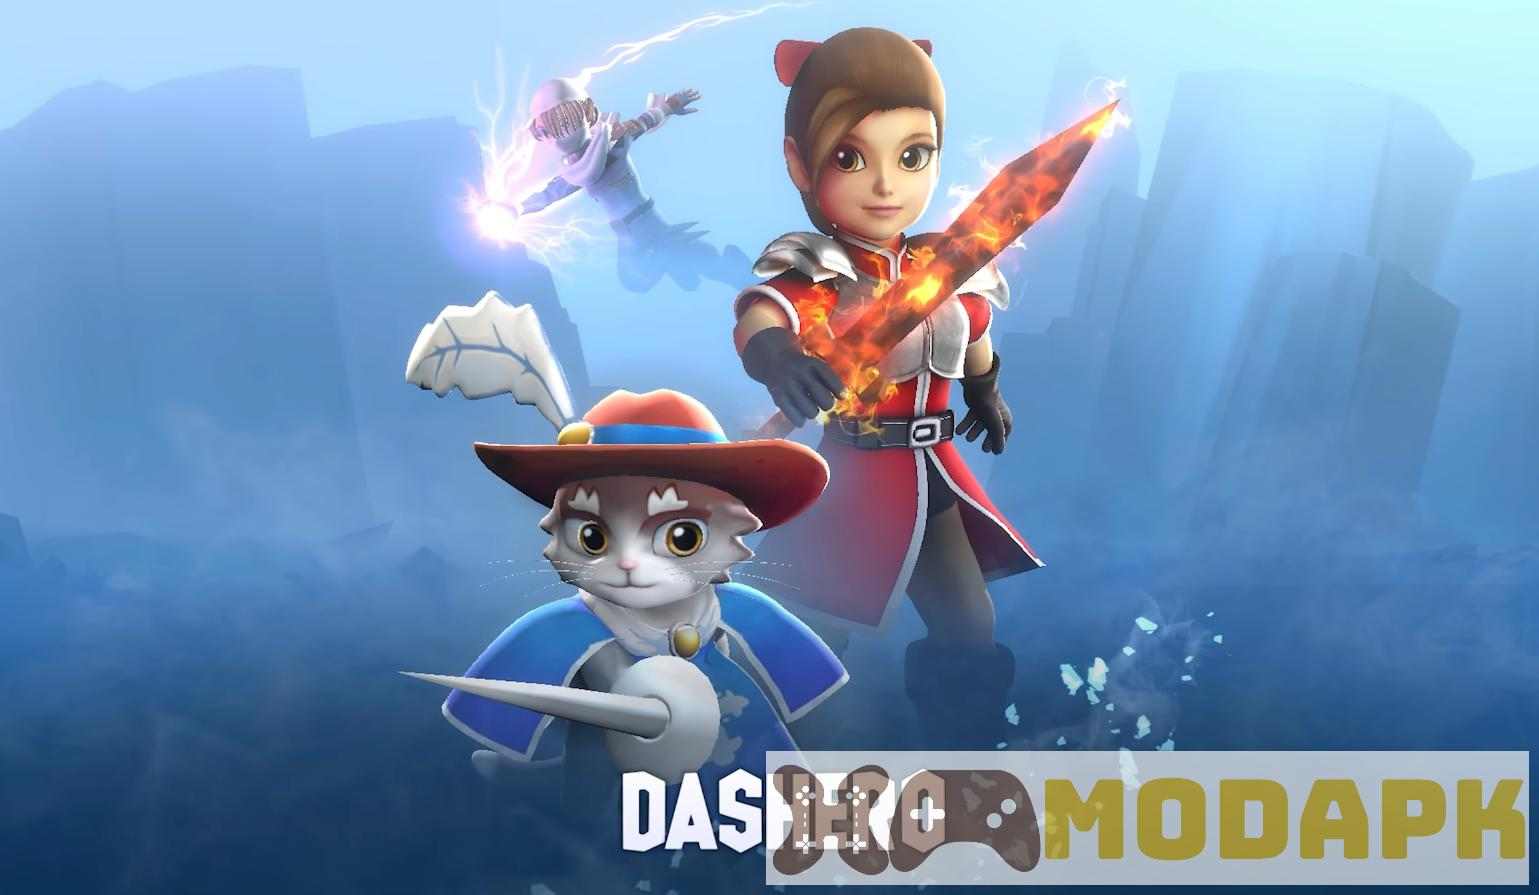 Dash.io MOD (Menu Pro, Tiền Full, Thiệt Hại Lớn, Sức Chịu Đựng Cao, Địch Yếu) APK 0.9.9